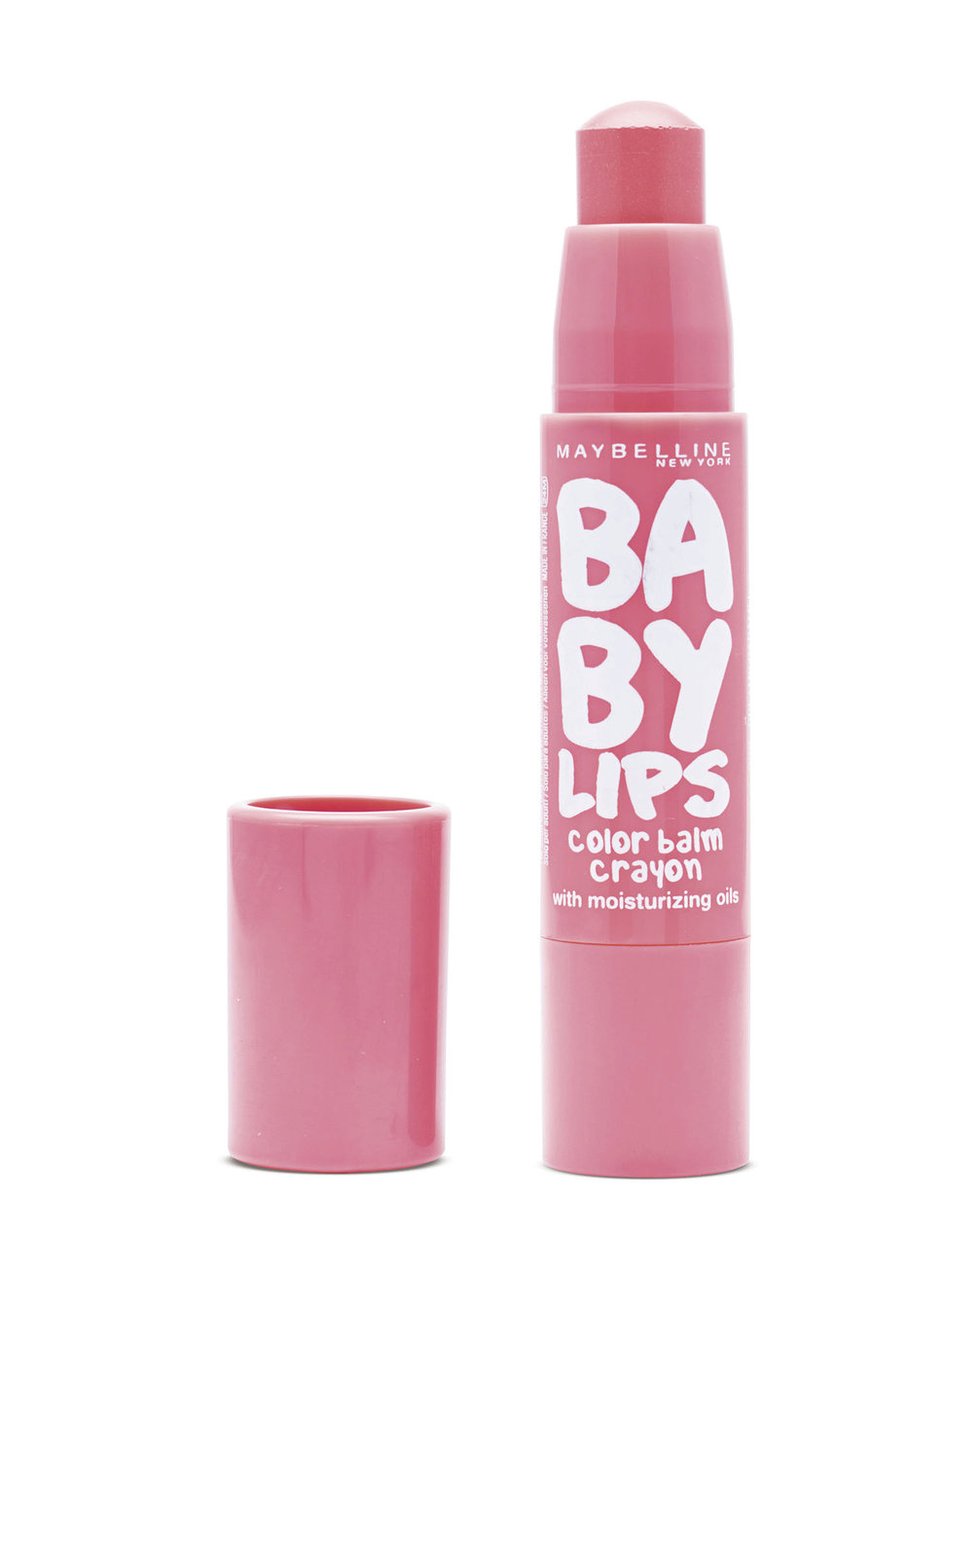 Maybelline Baby Lips Color Balm Crayon, odstín 030 Creamy caramel, 139 Kč. Koupíte v drogeriích.